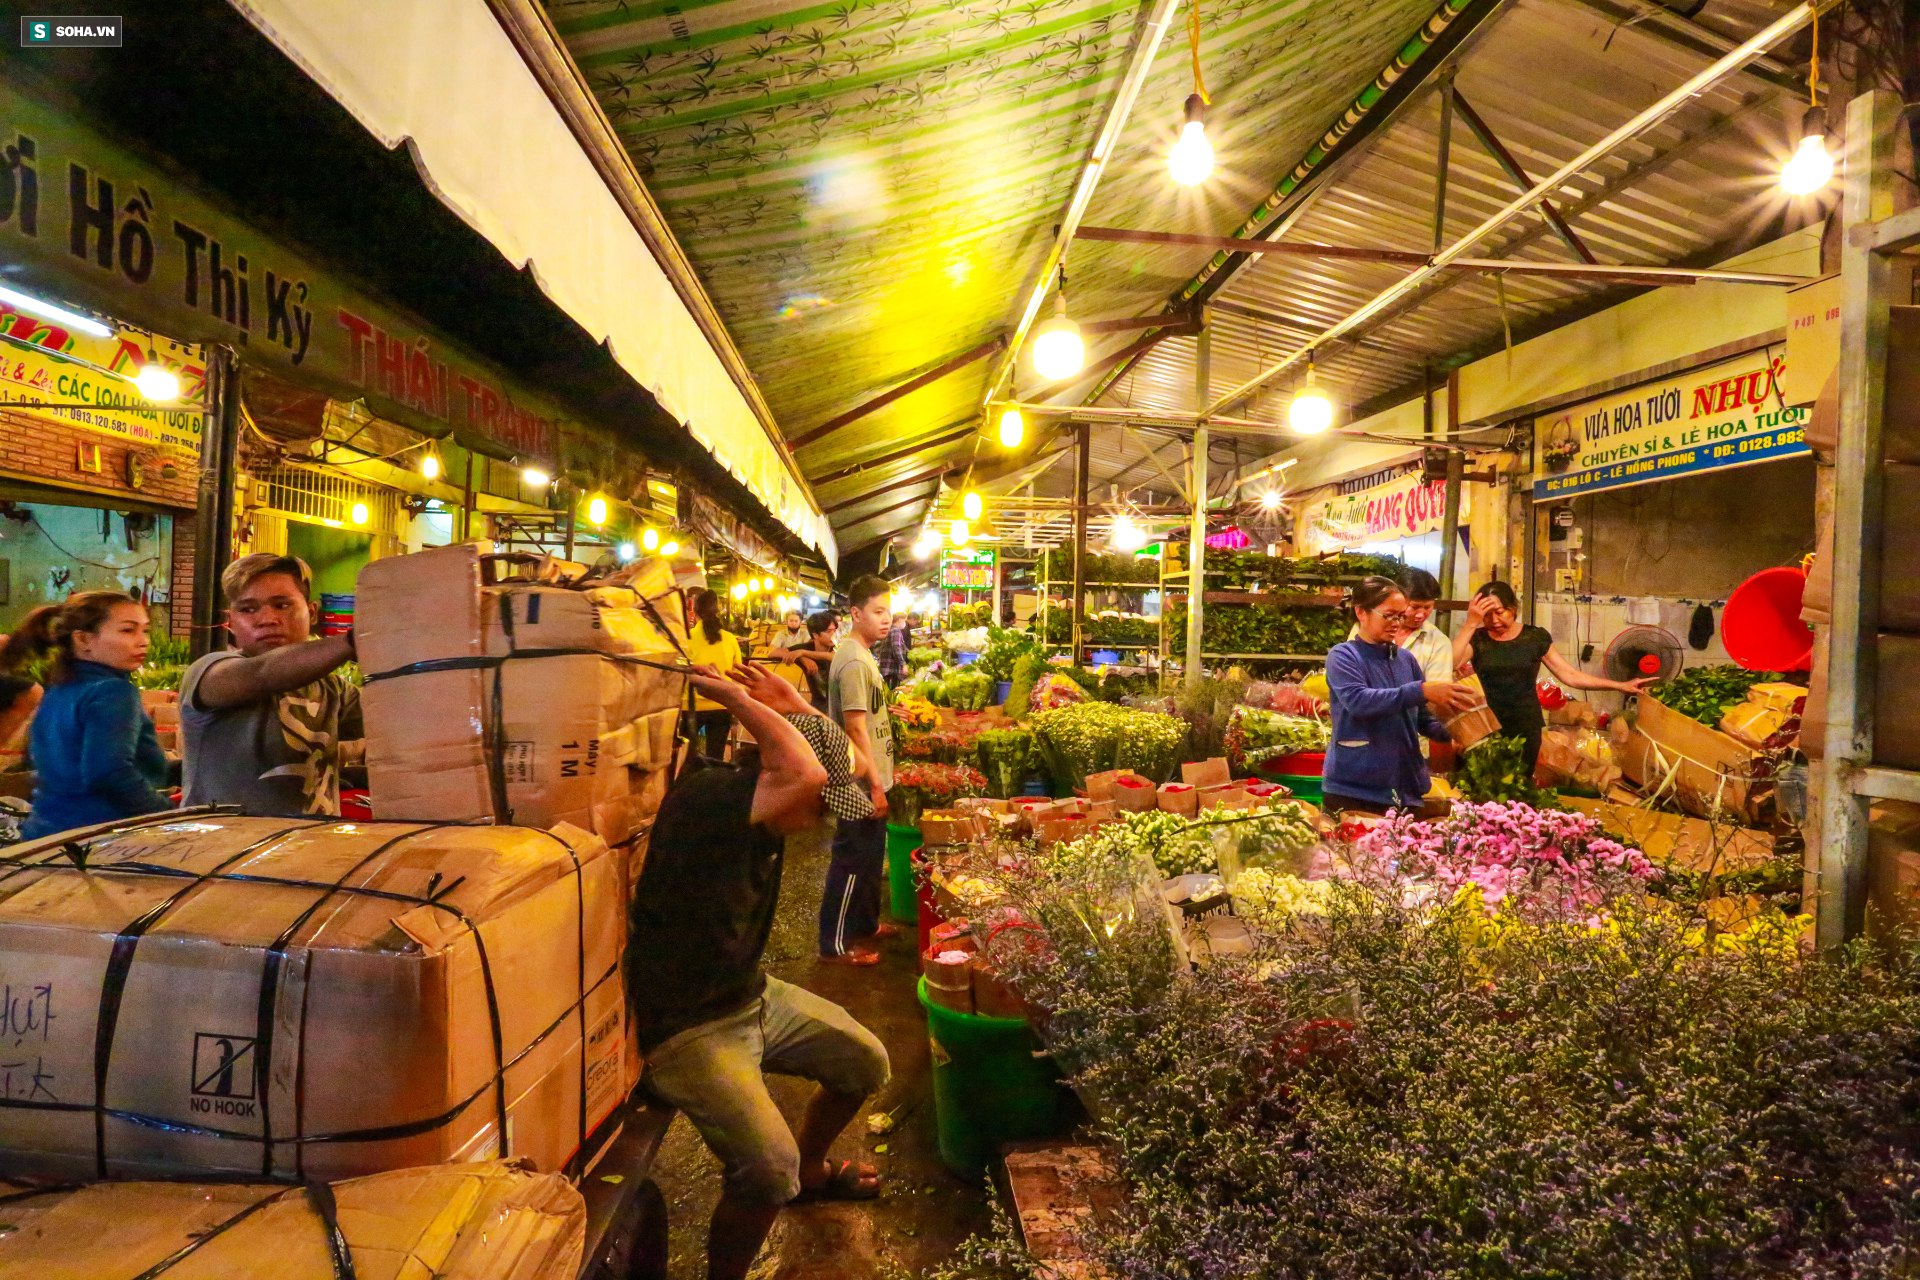 Chợ hoa 30 năm không ngủ ở Sài Gòn nhộn nhịp lúc 2 giờ sáng đón ngày 8/3 - Ảnh 12.